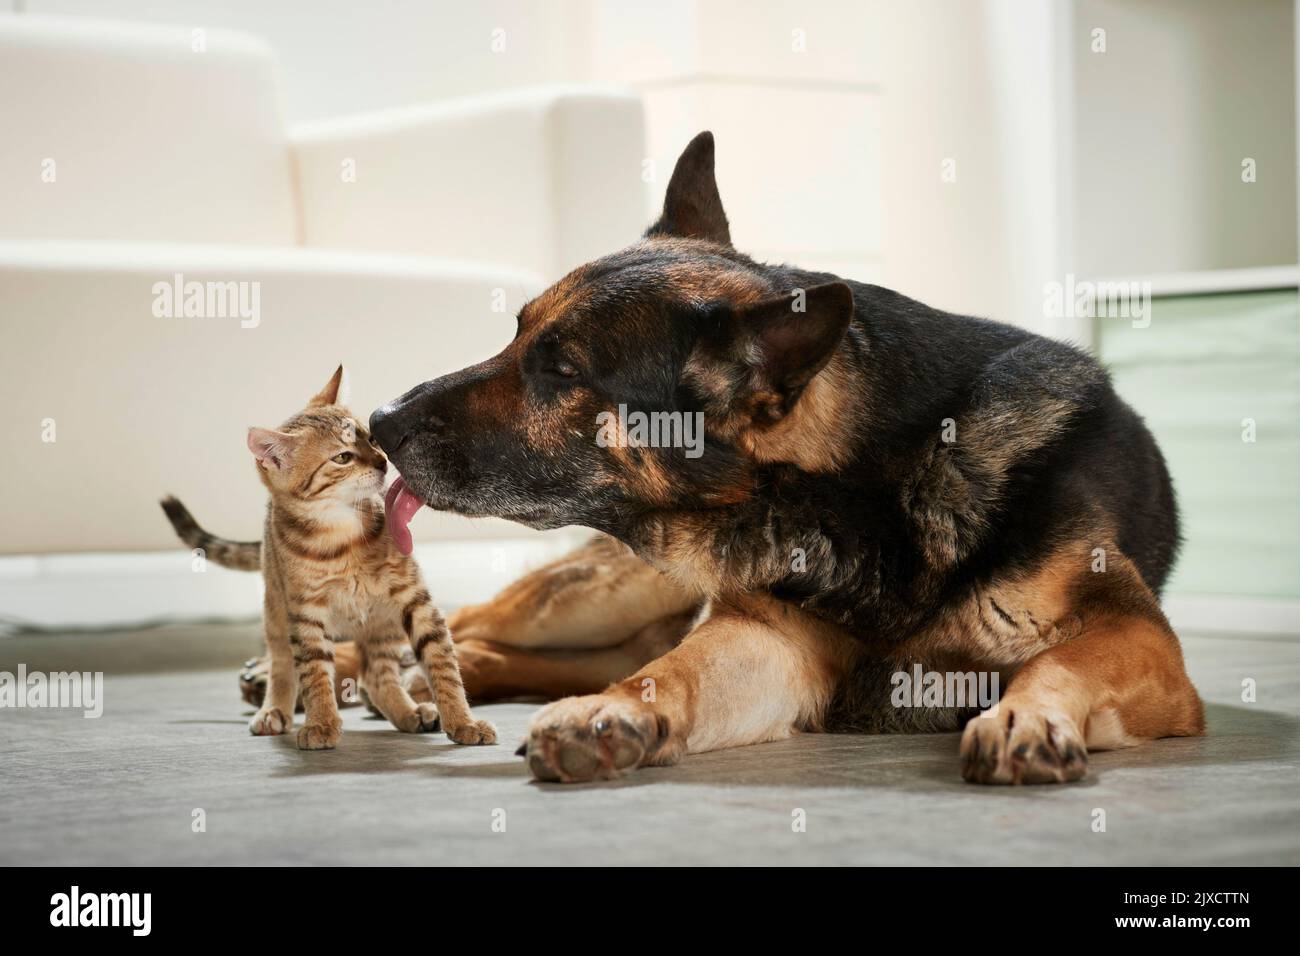 Gato doméstico. Un perro pastor adulto lame suavemente a un gatito. Alemania Foto de stock